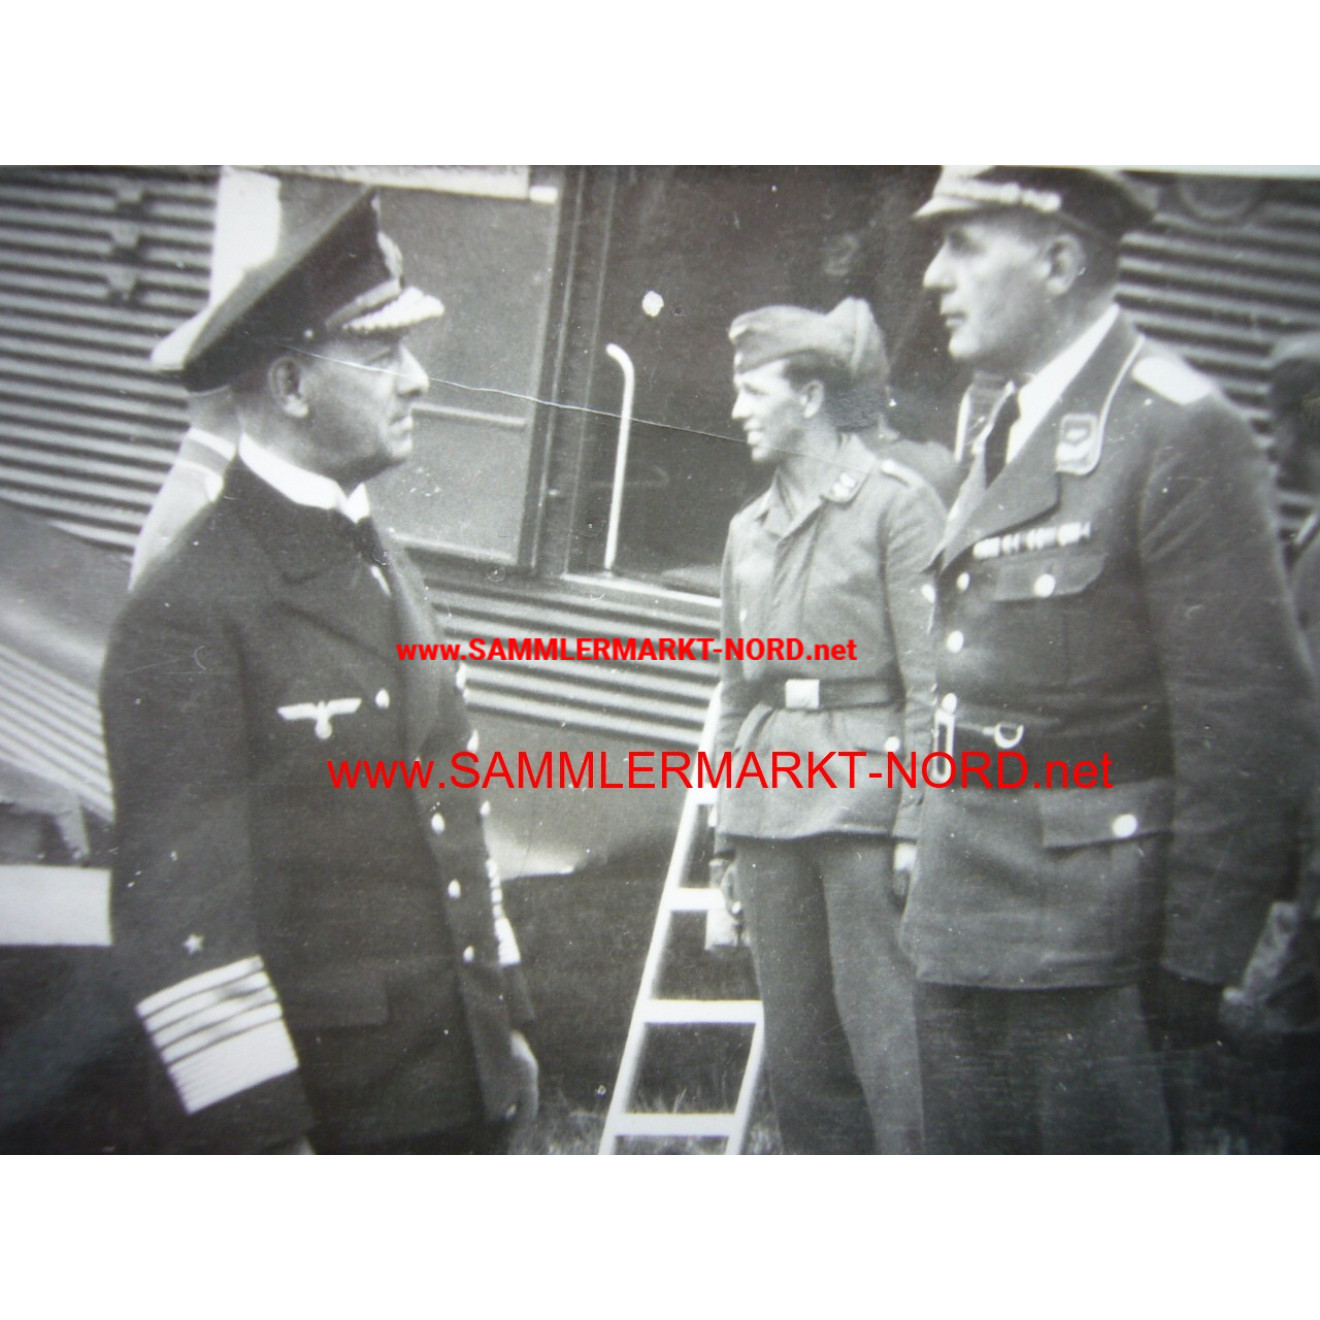 Großadmiral Erich Raeder und Oberleutnant v. Ehrenfeld auf dem F